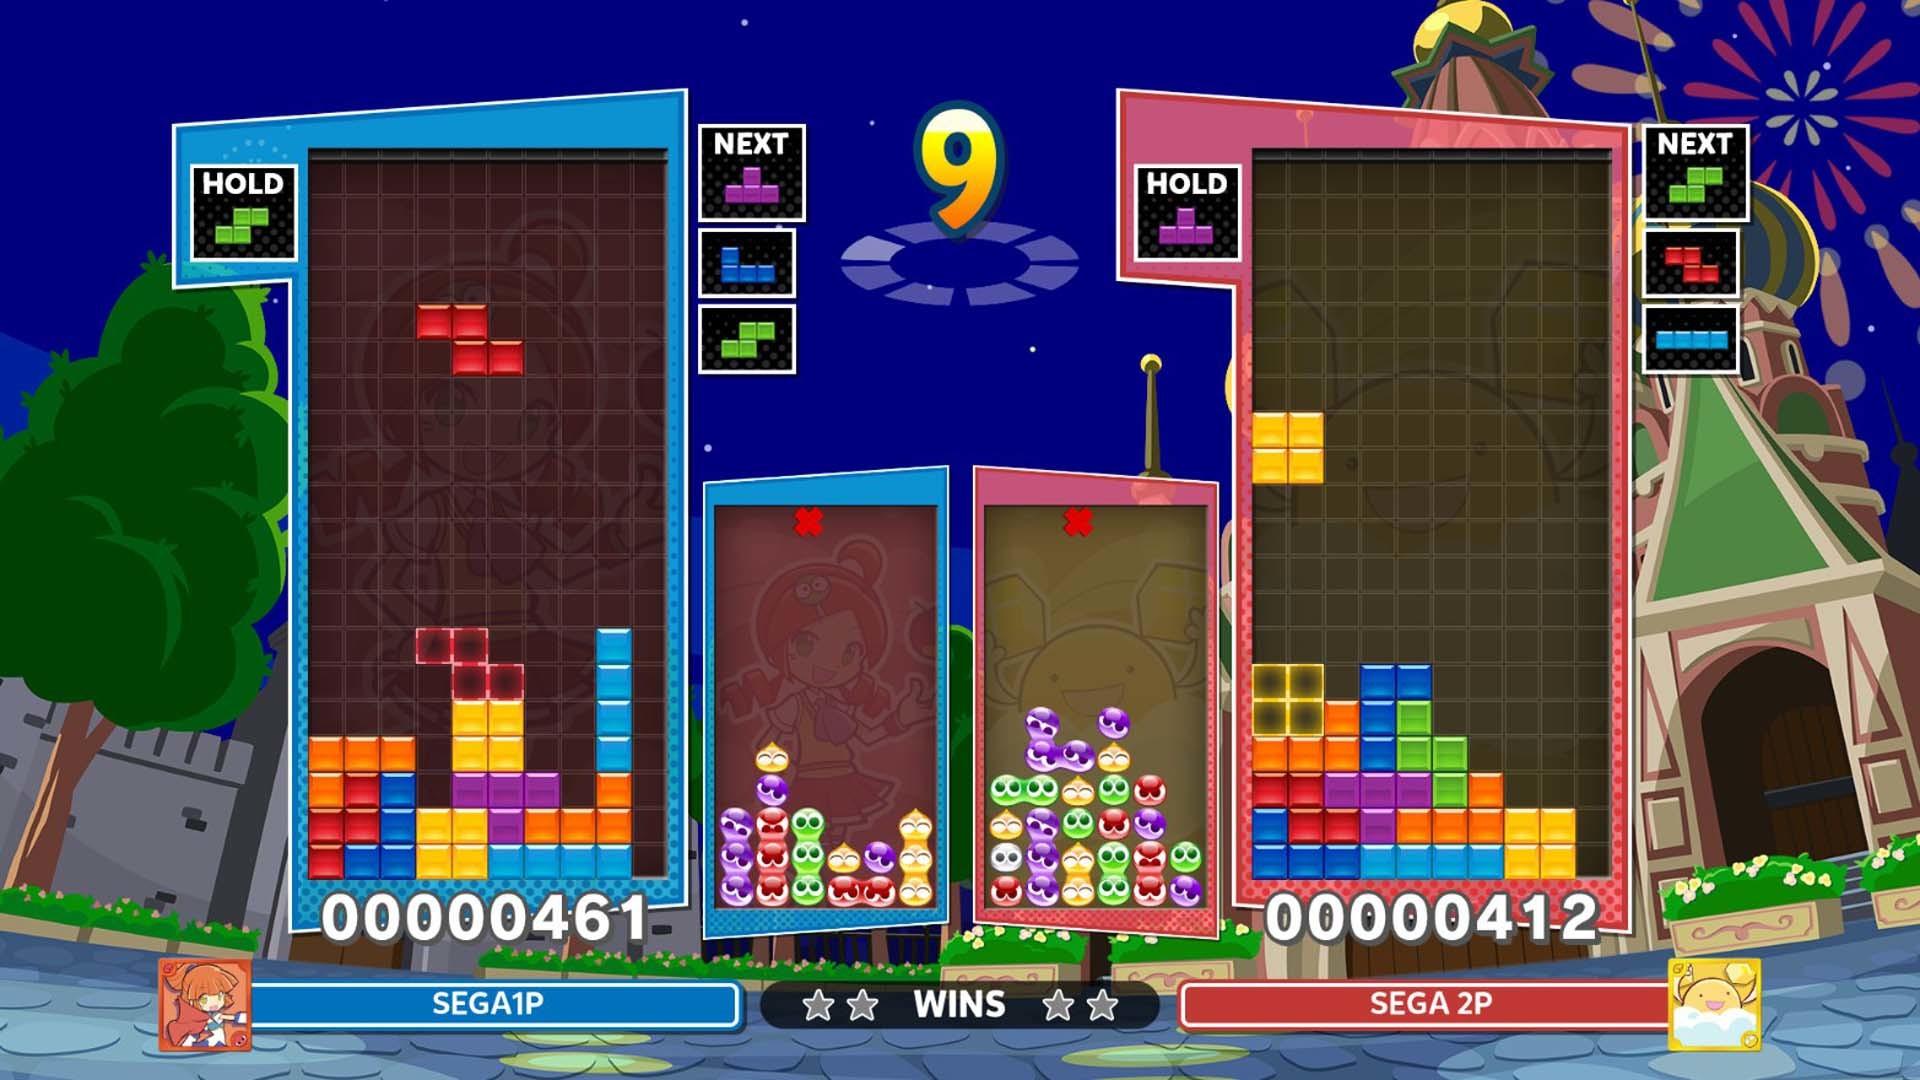 Puyo Puyo™ Tetris® 2